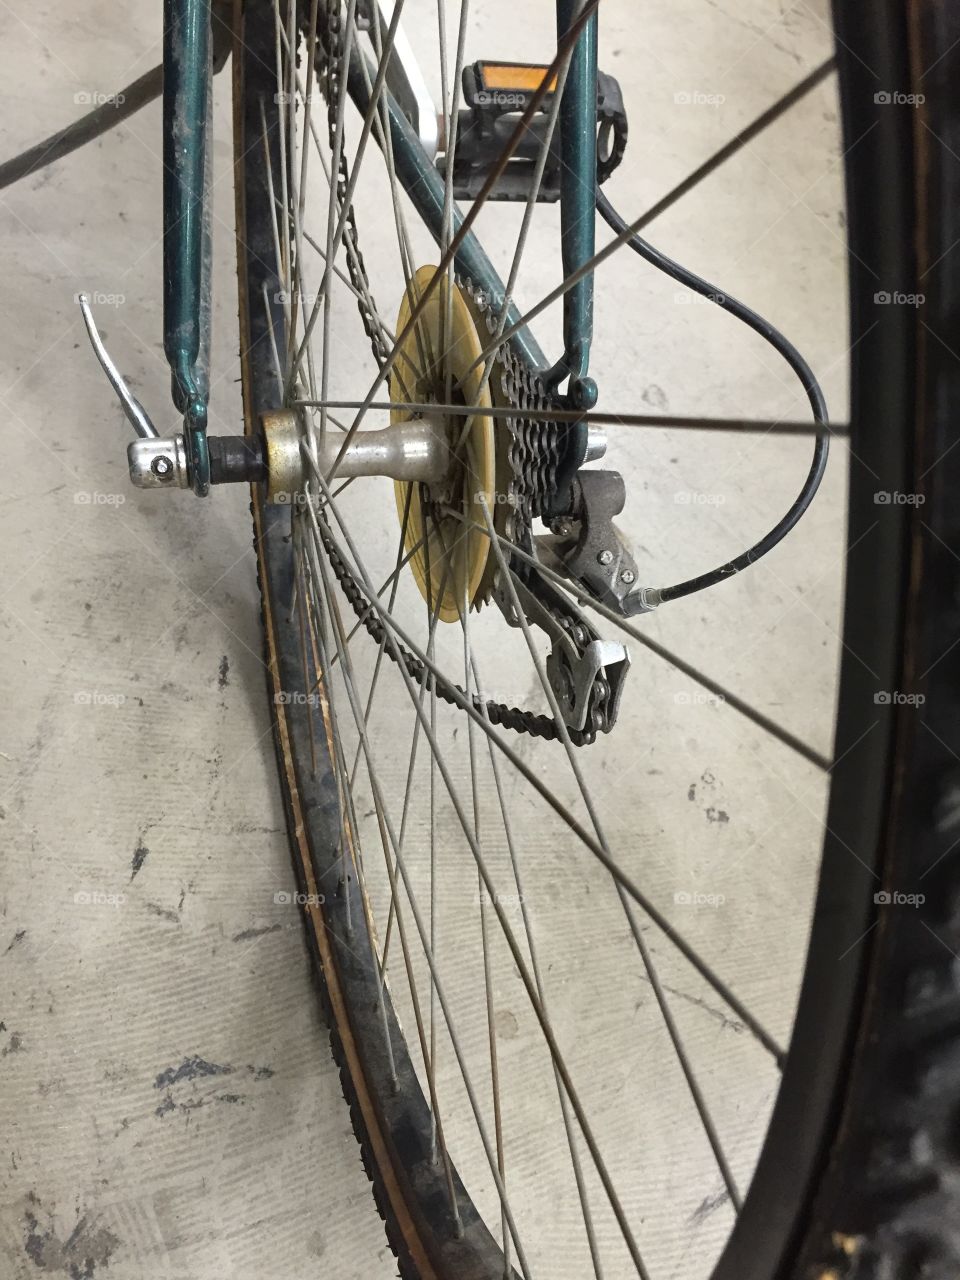 Bike spokes. Close up of a bike wheel.